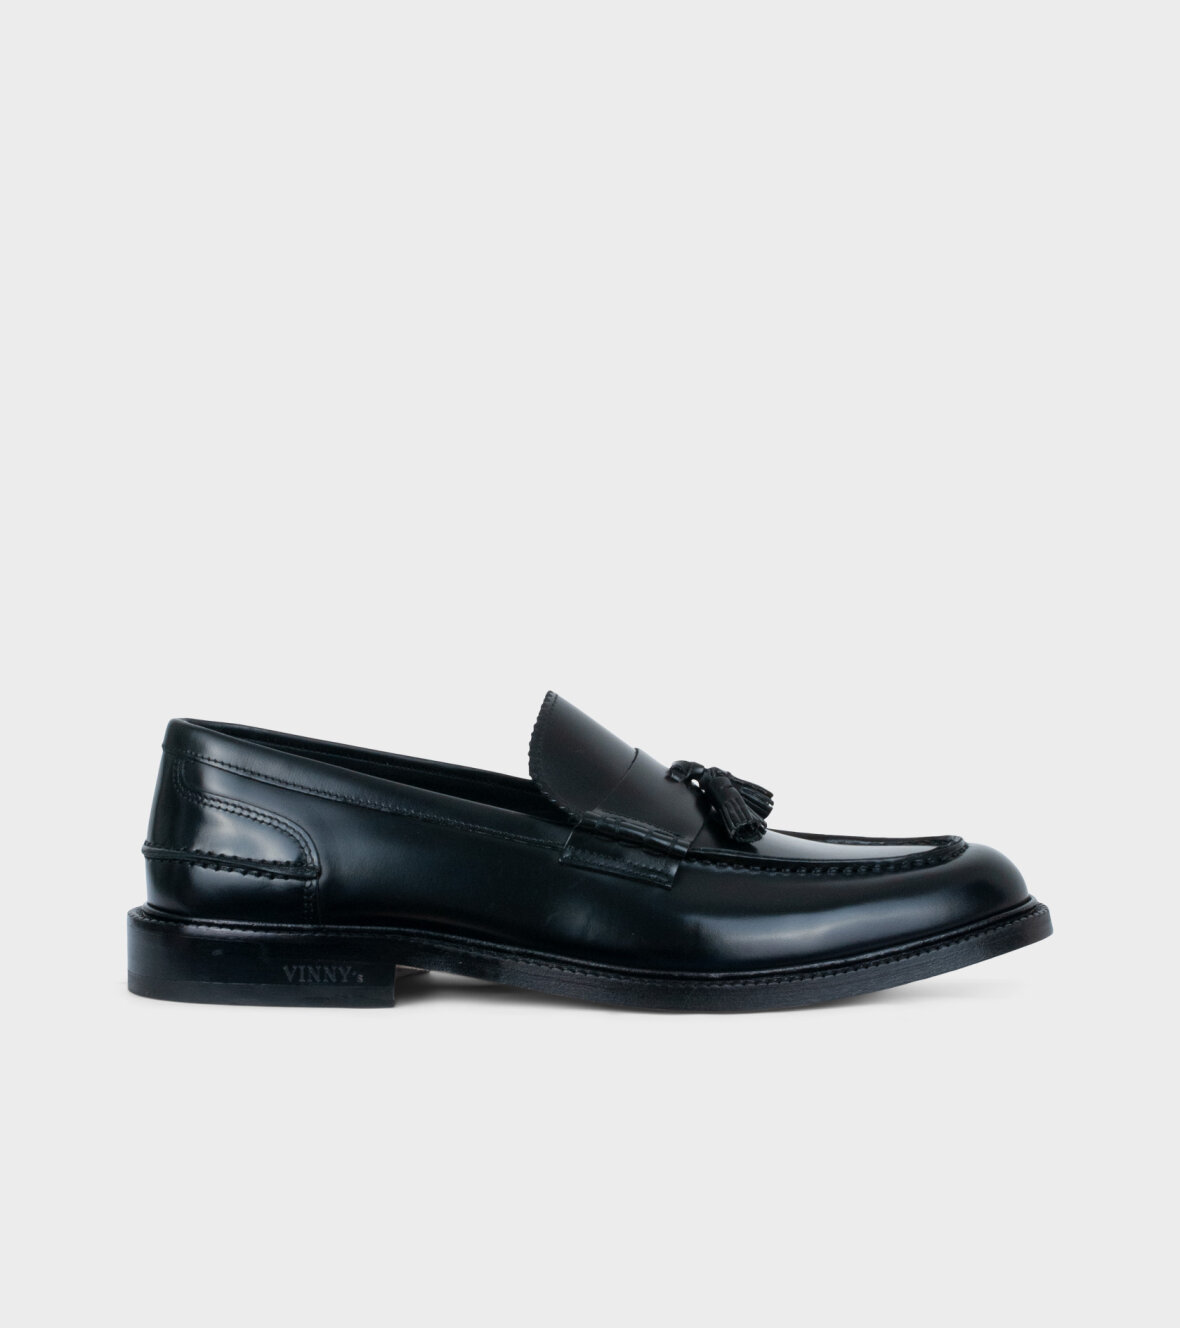 dr. Adams - Shoes Vinny´s Chico Tassel Loafer Black